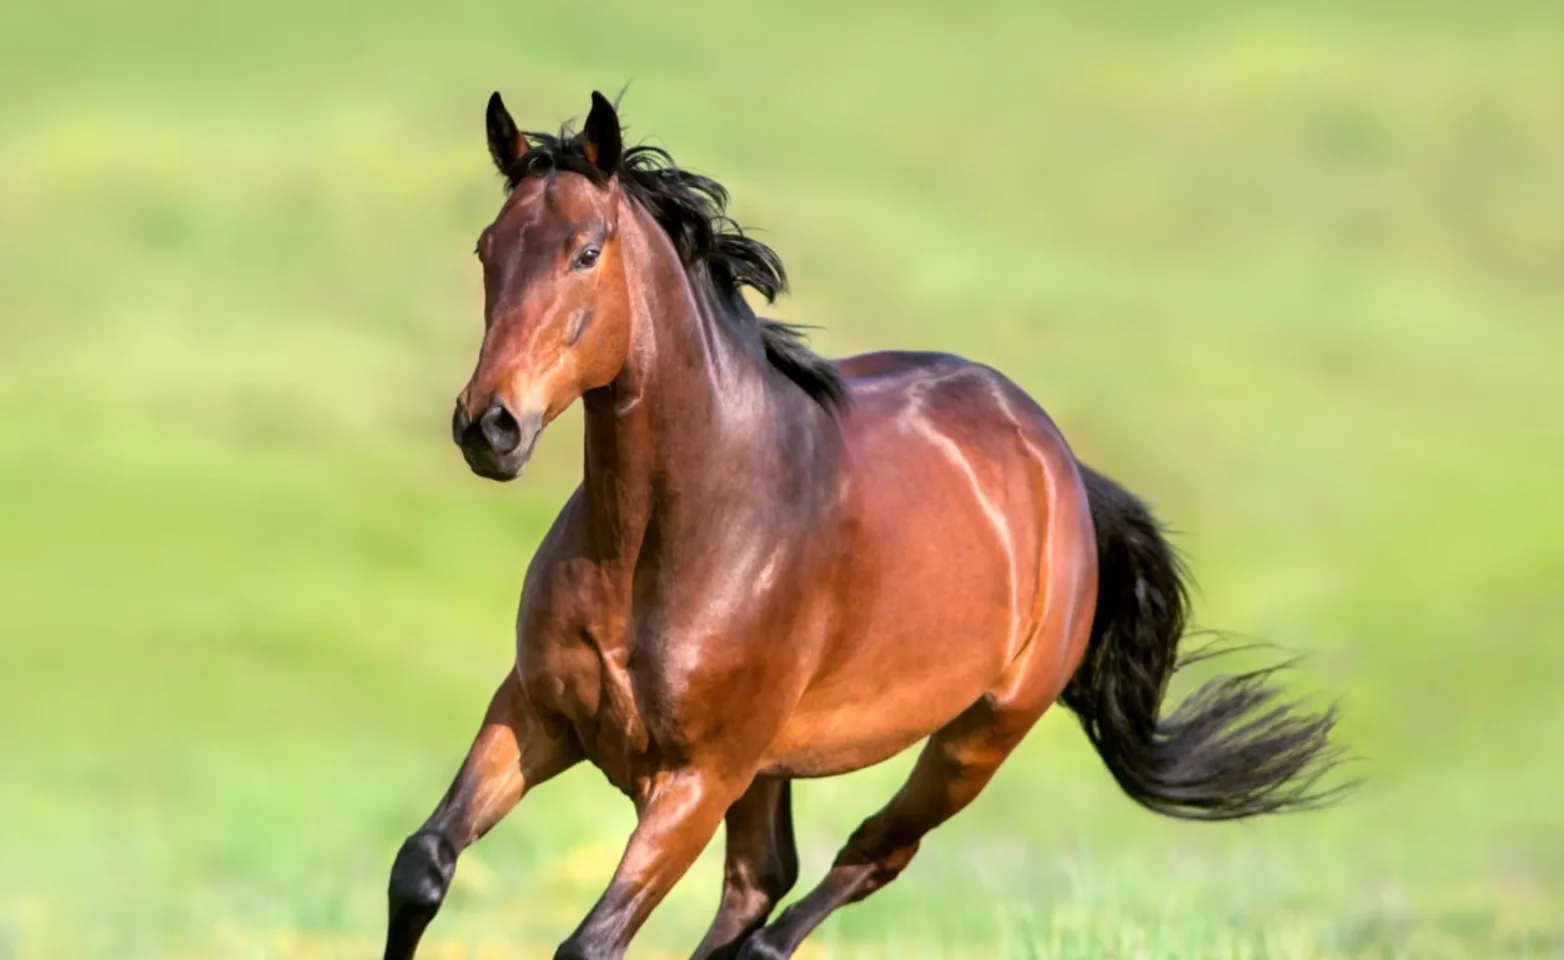 Brown horse running through grass field